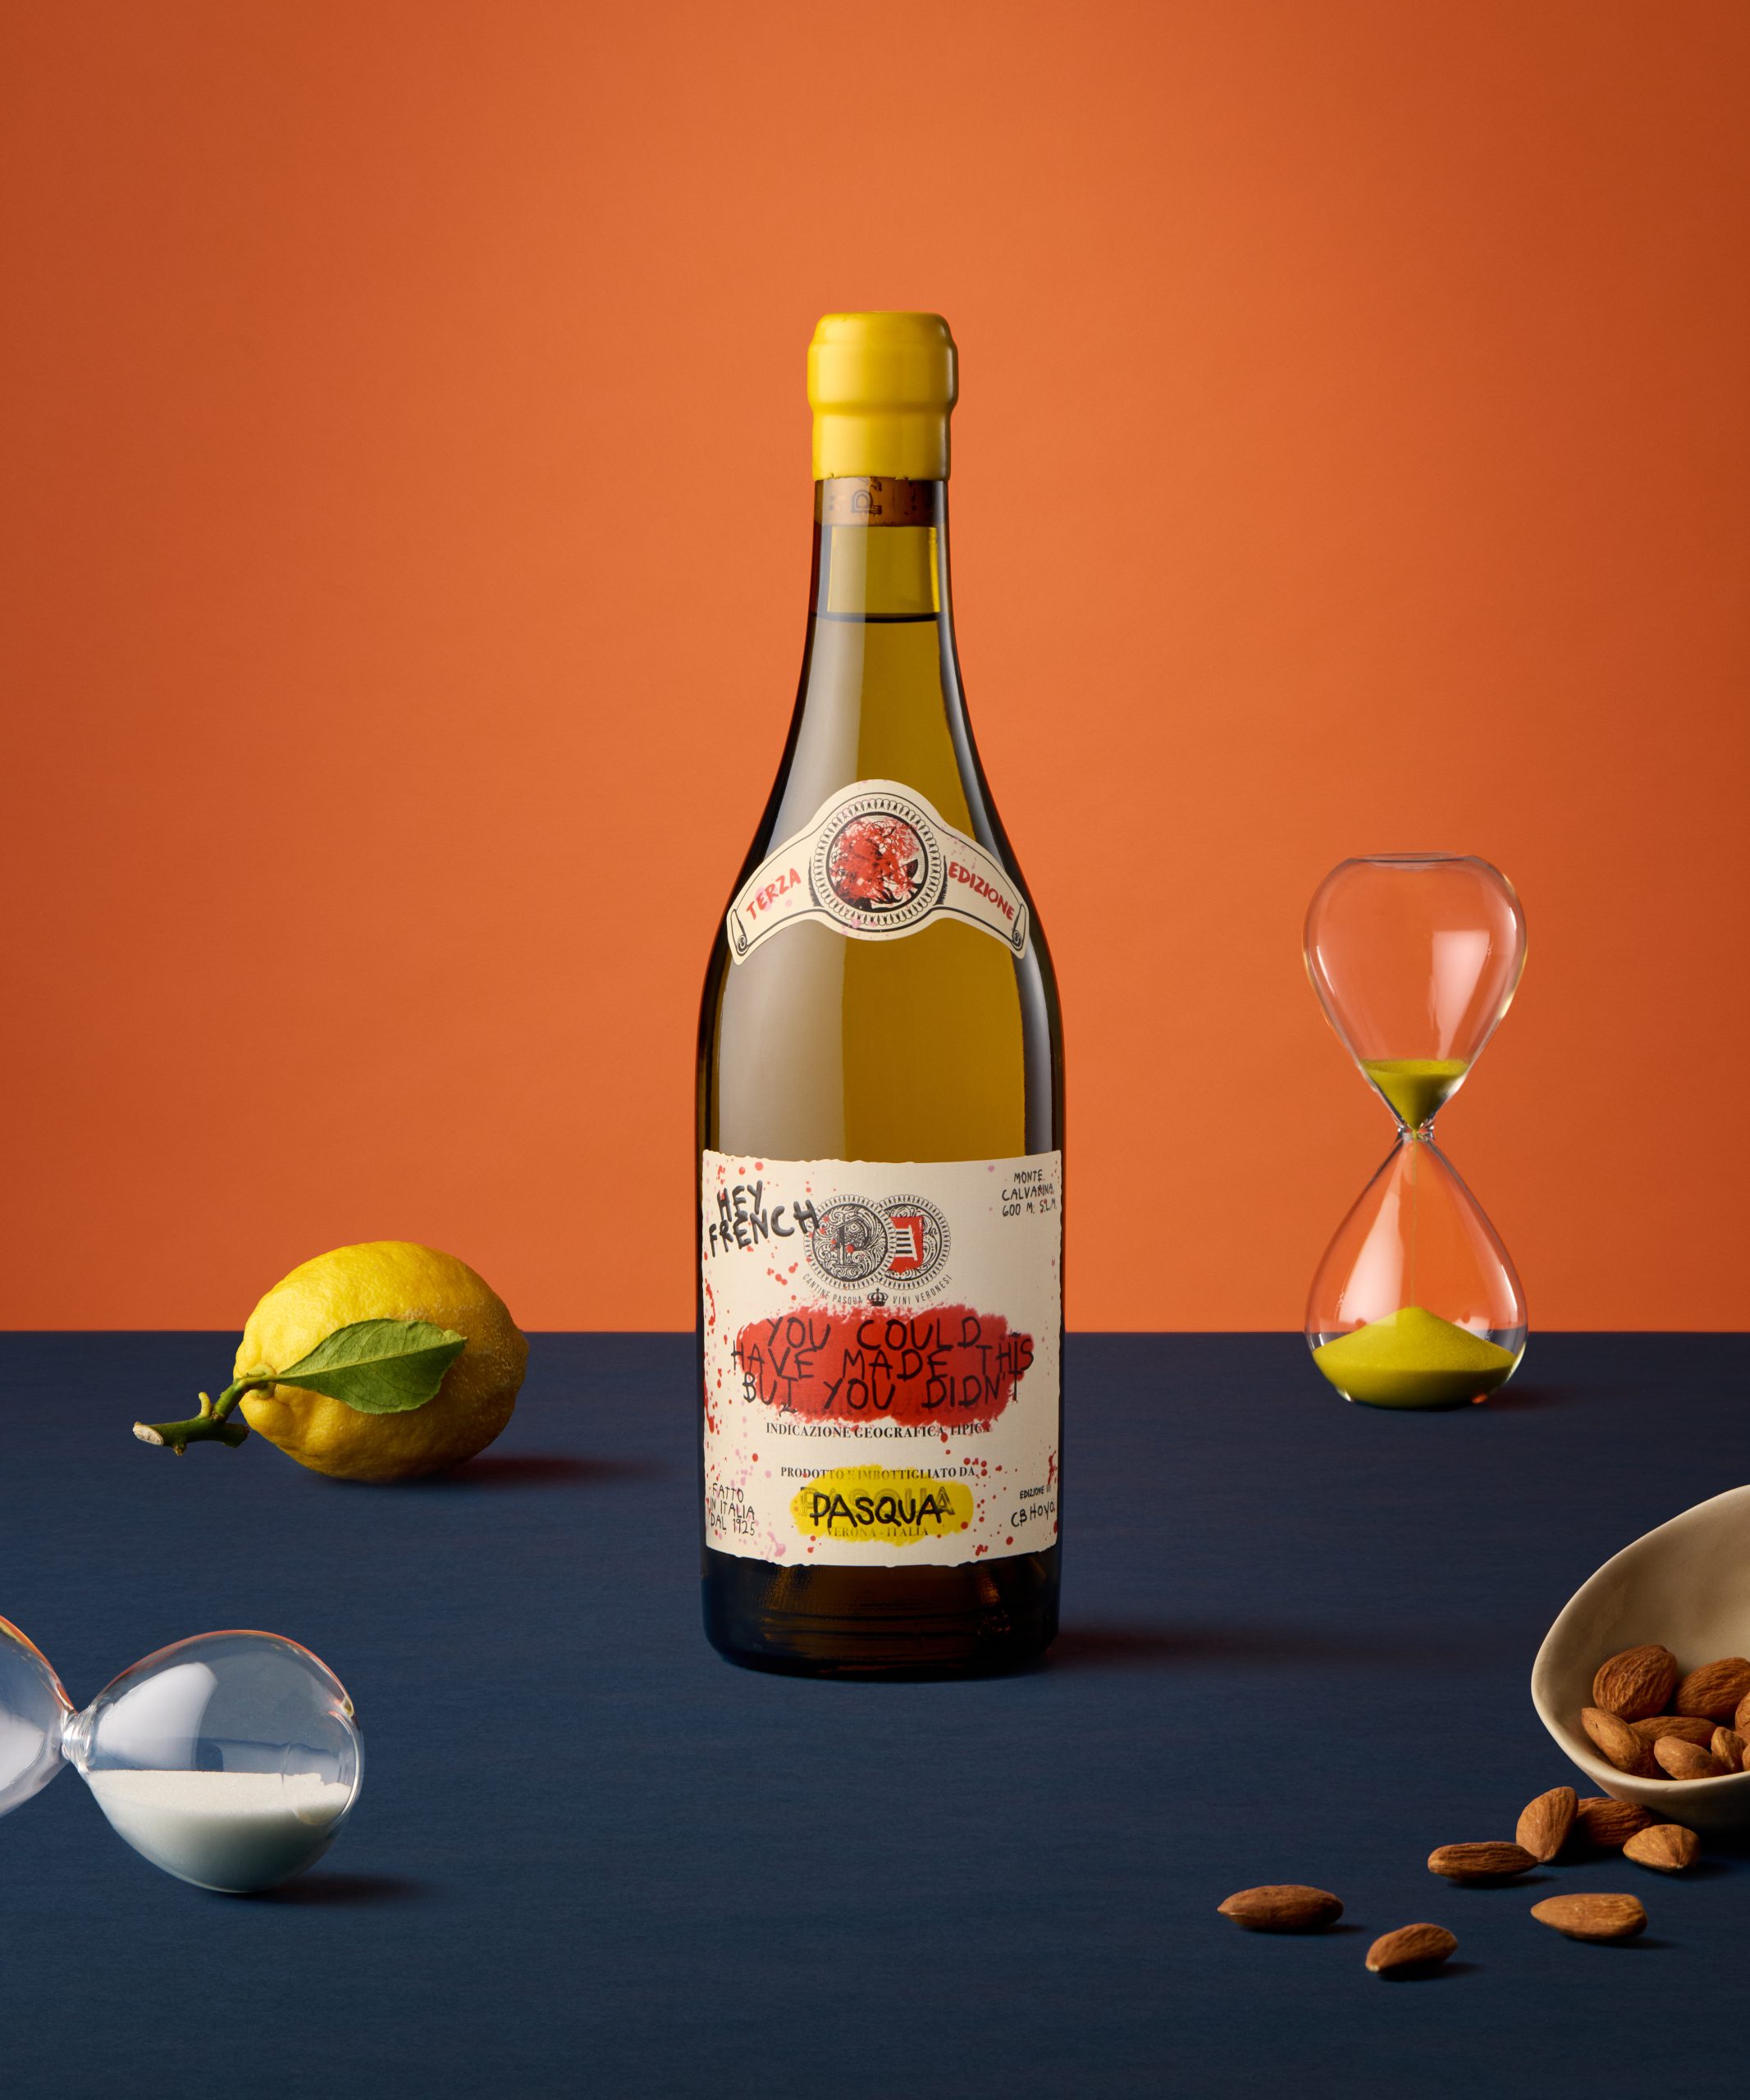 橙色背景的蓝色桌子上放着一瓶 "Hey French "葡萄酒。桌上还有沙漏、柠檬和杏仁。